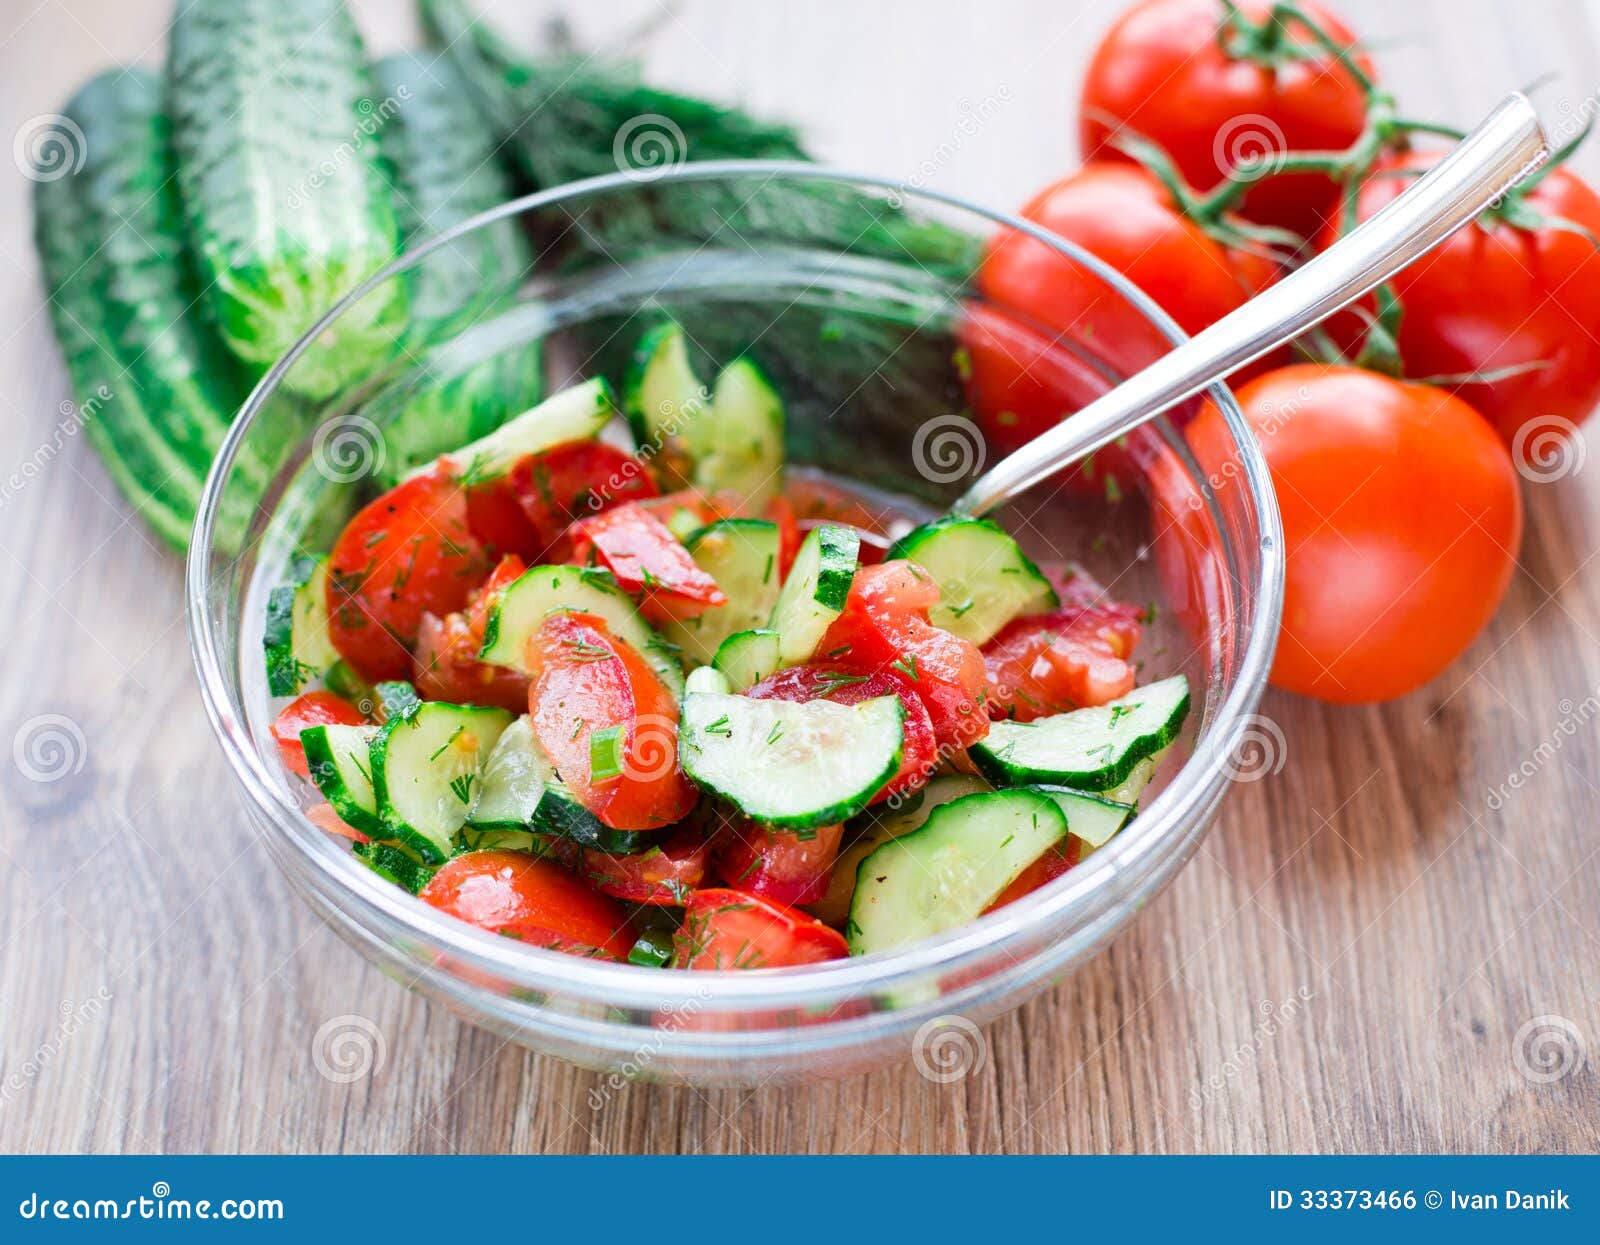 салат огурцы помидоры раст масло калорийность фото 80